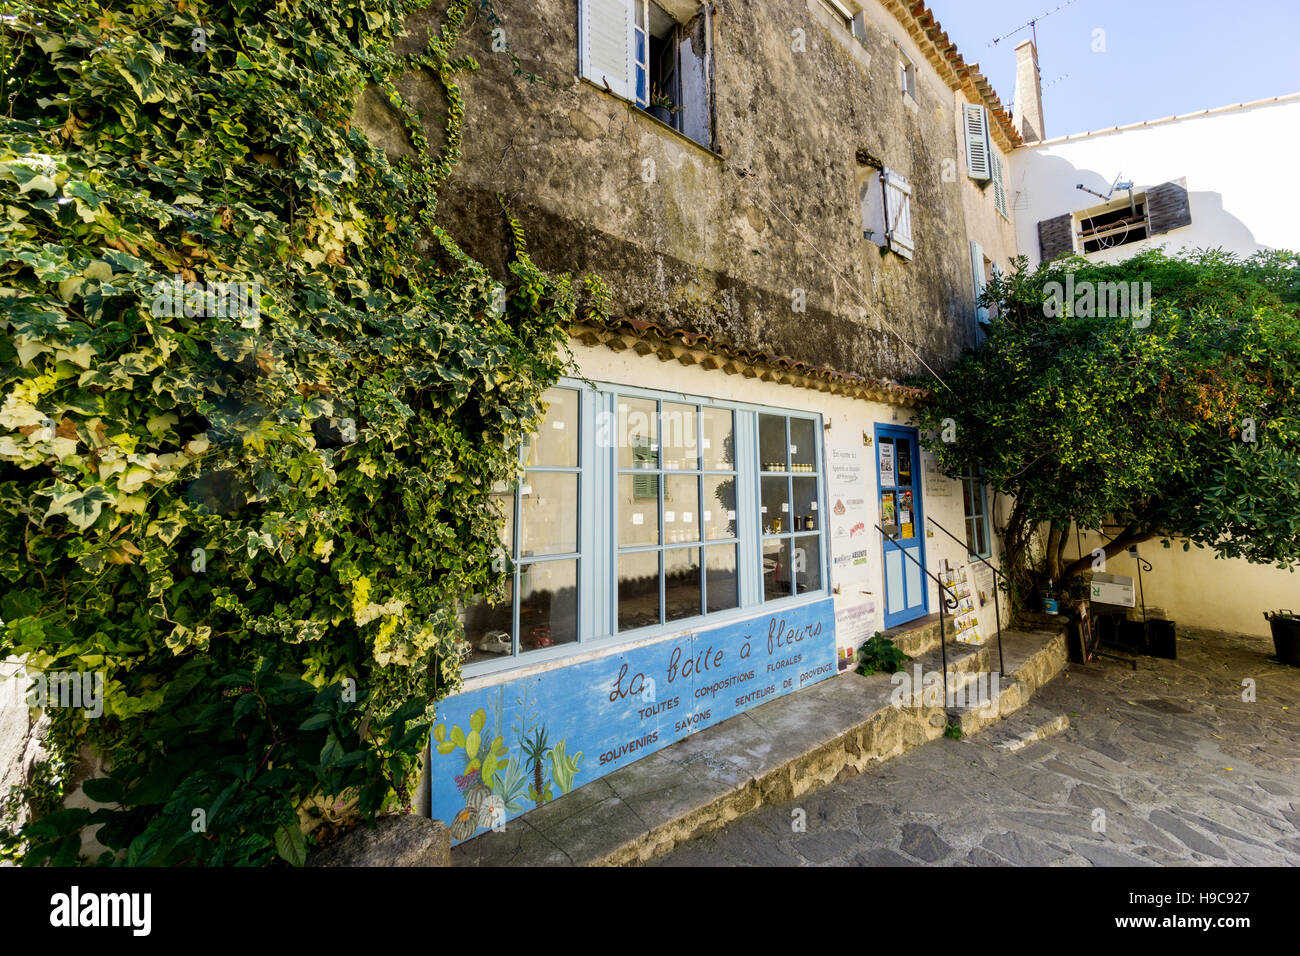 La Boite ein Fleurs, einem typisch provenzalischen Shop in das malerische Südfrankreich Dorf Ramatuelle, Var, Frankreich Stockfoto